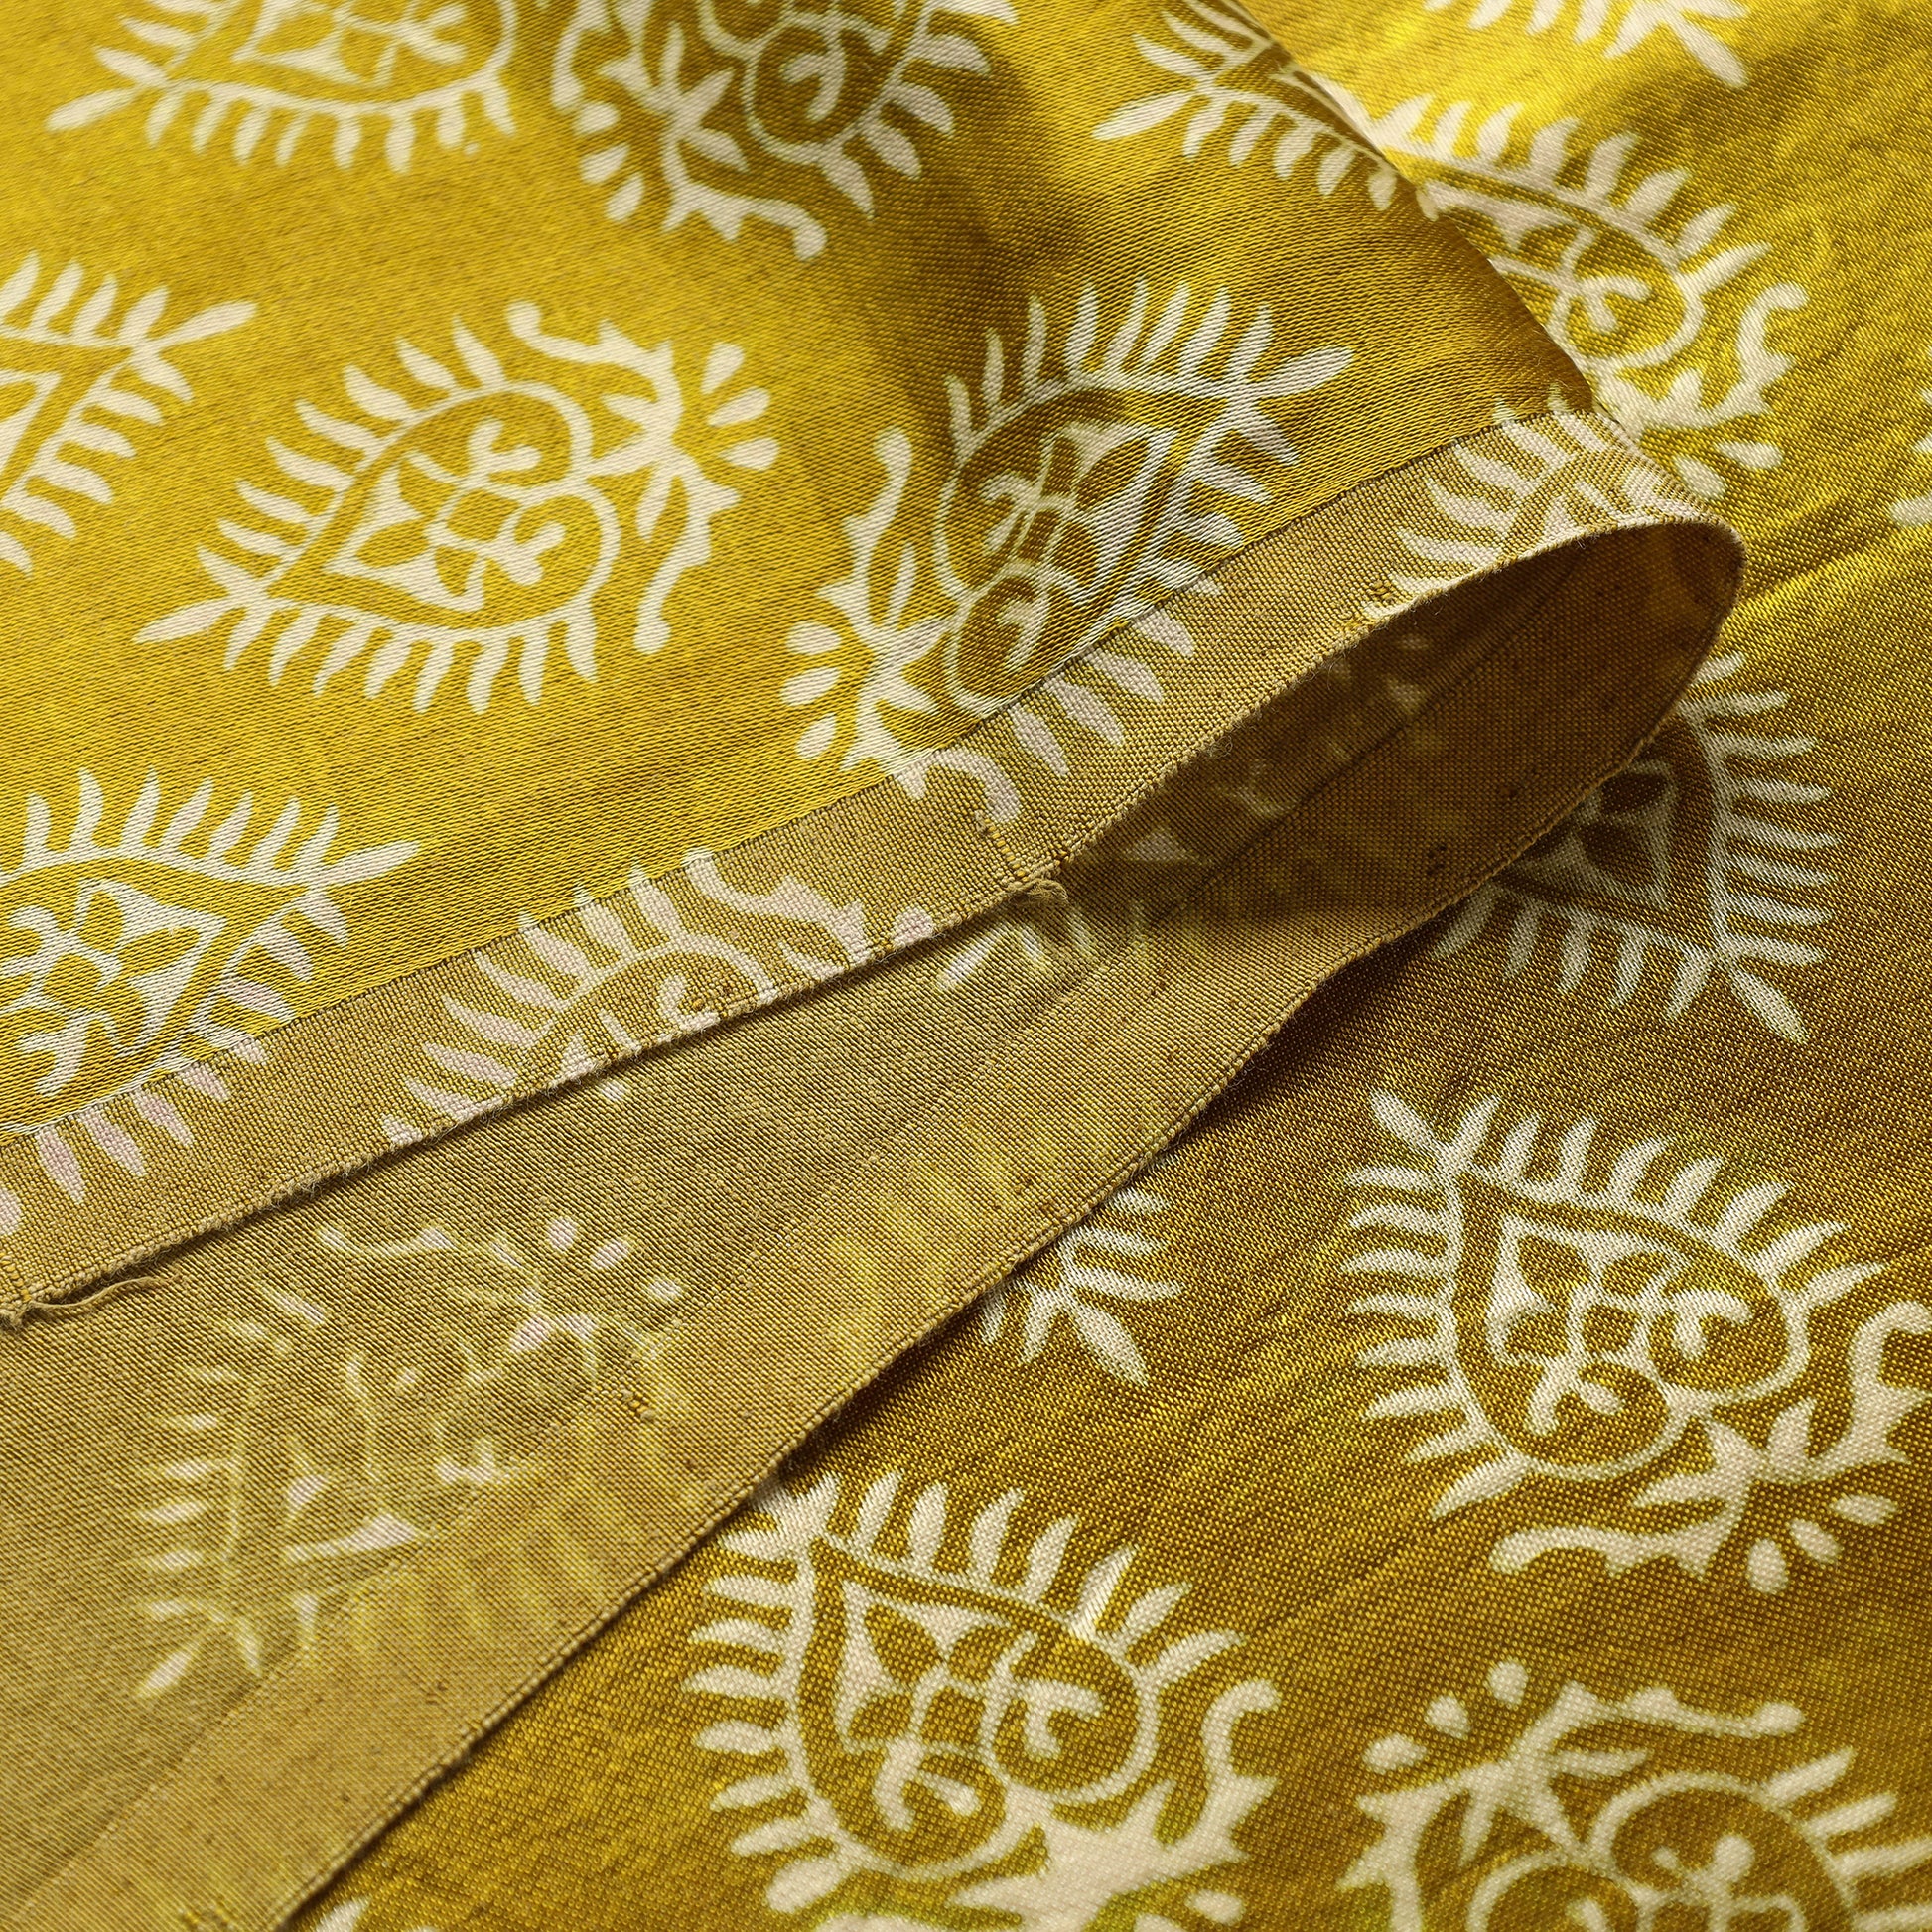 Mashru Silk Kutch Hand Block Printed Fabric
